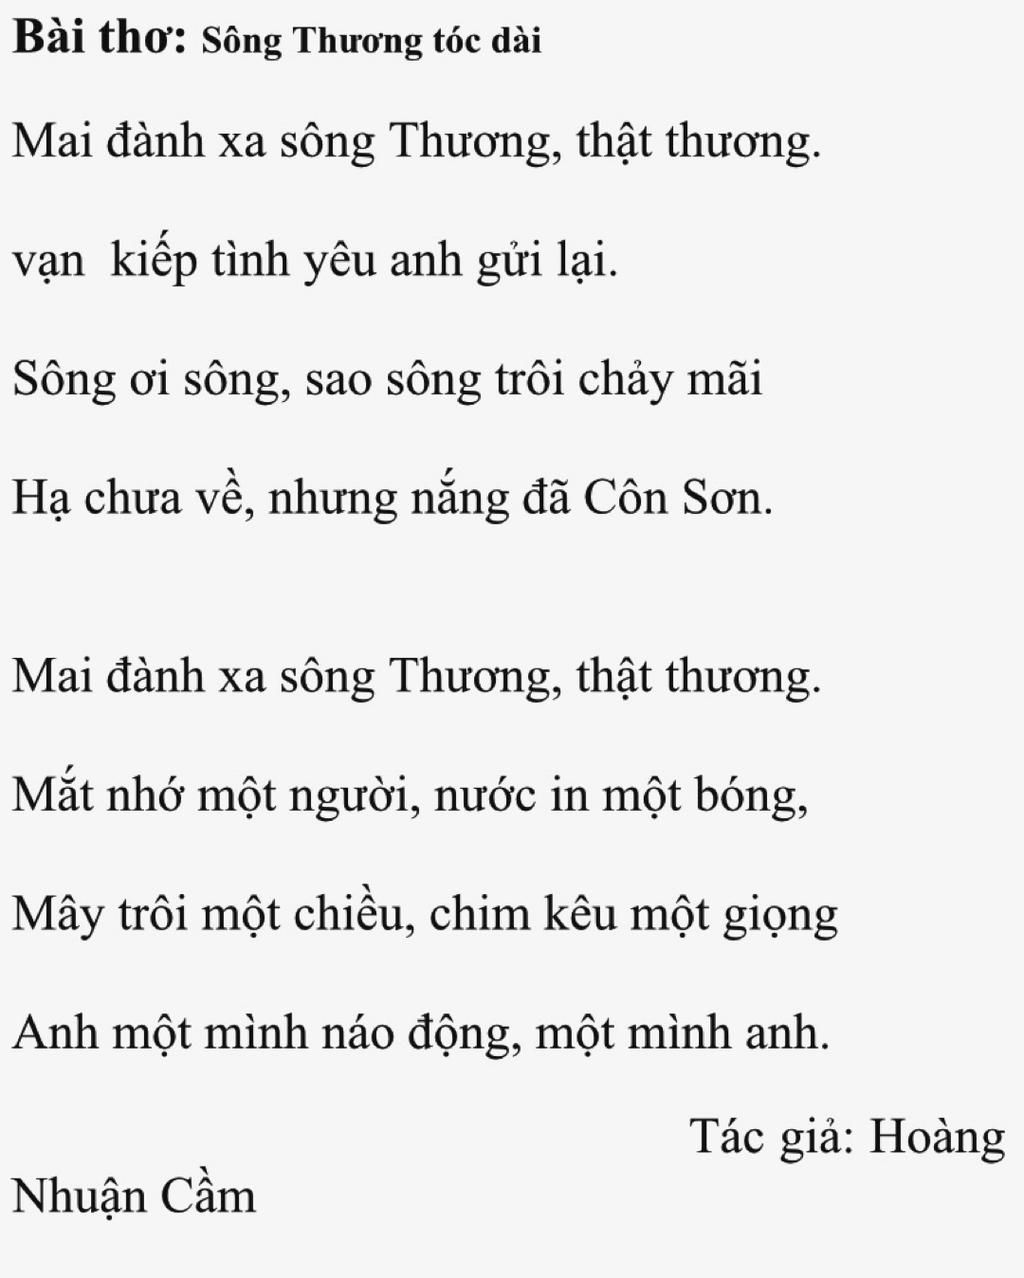 10 bài thơ hay của Hoàng Nhuận Cầm nổi bật và sâu sắc nhất